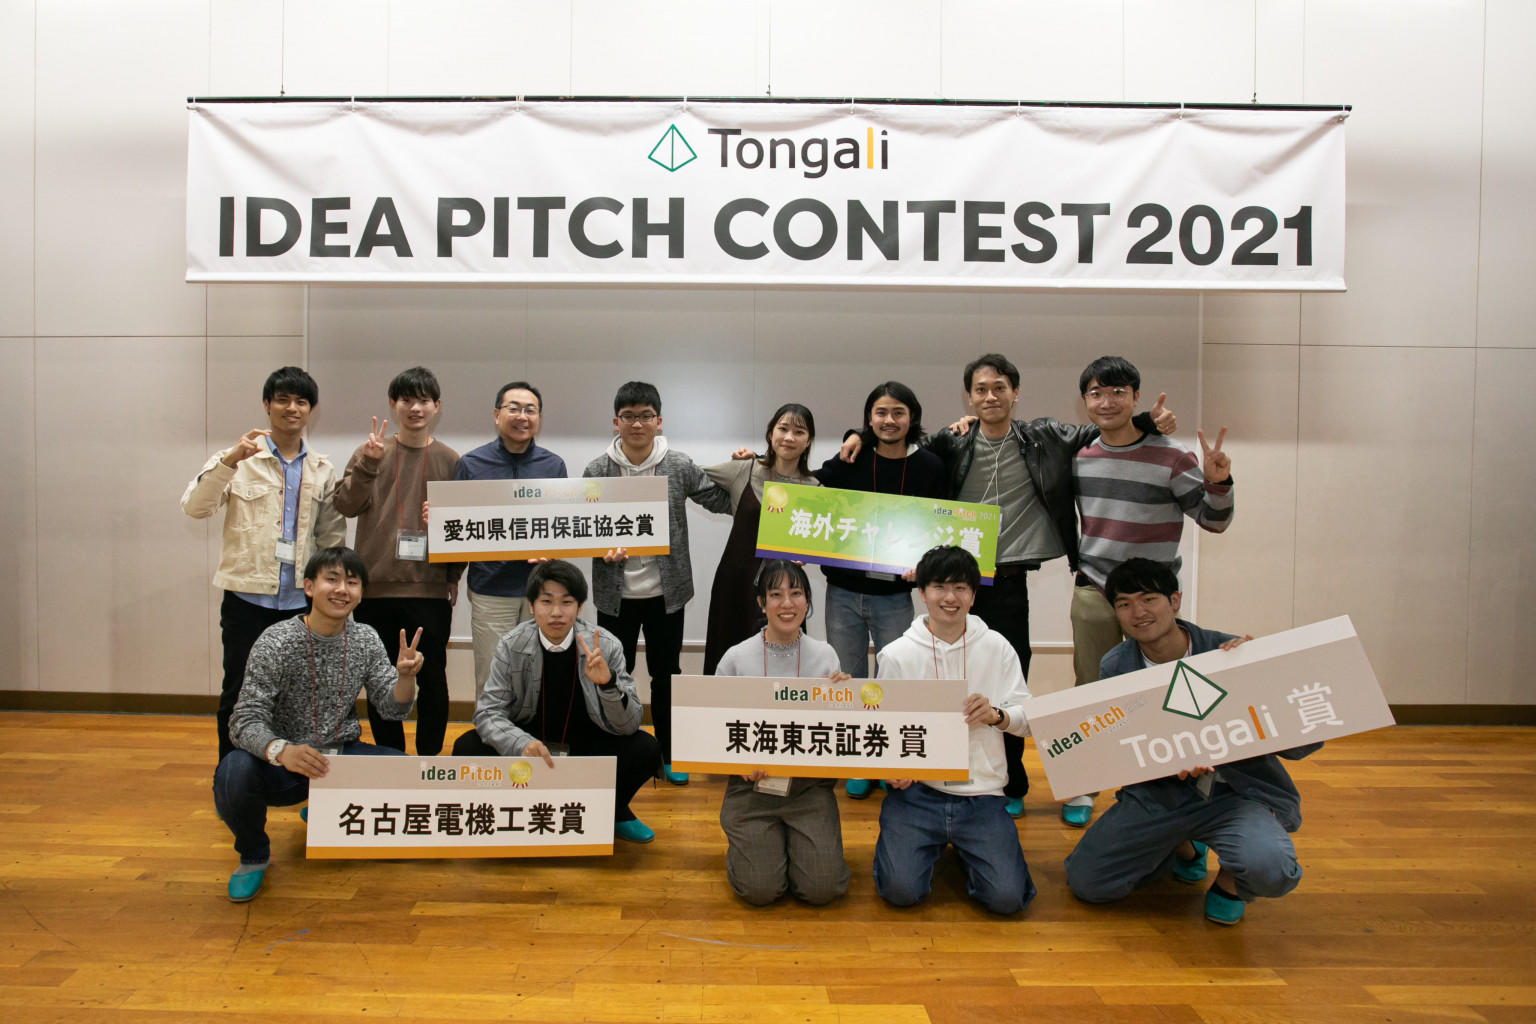 「Tongaliアイデアピッチコンテスト2021」で本学の2チームがサポーター賞